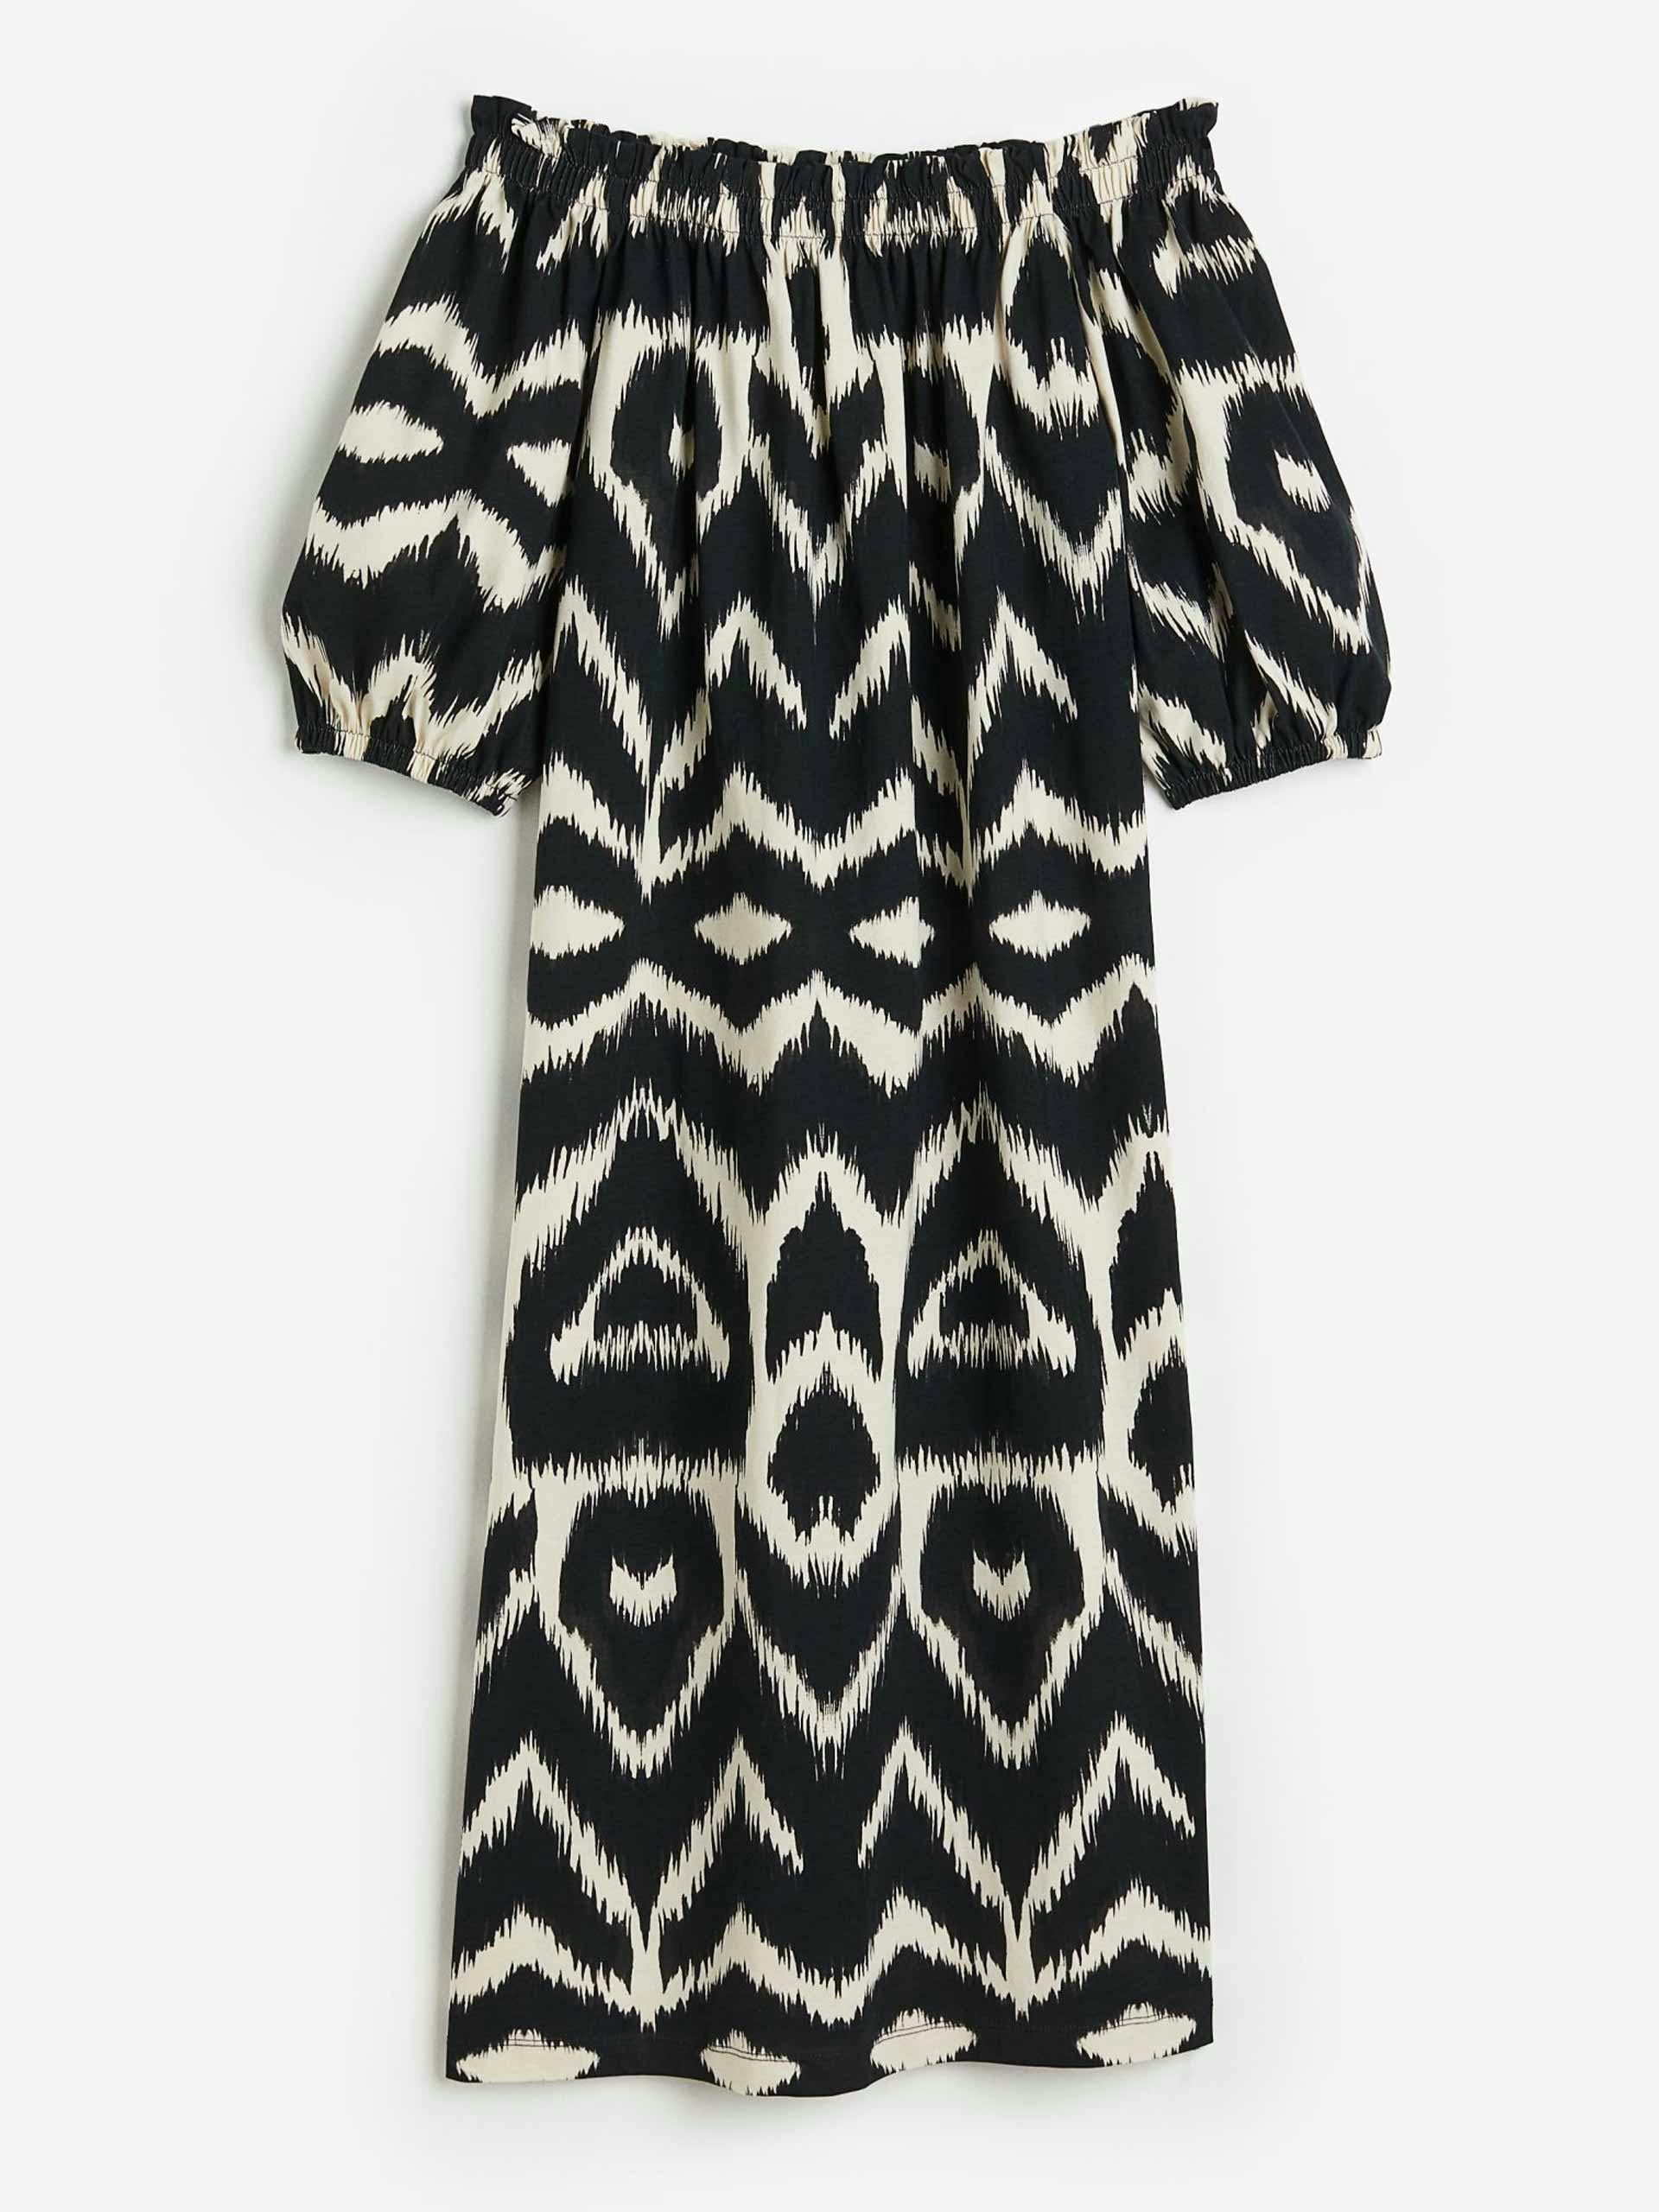 Black/patterned off-the-shoulder dress